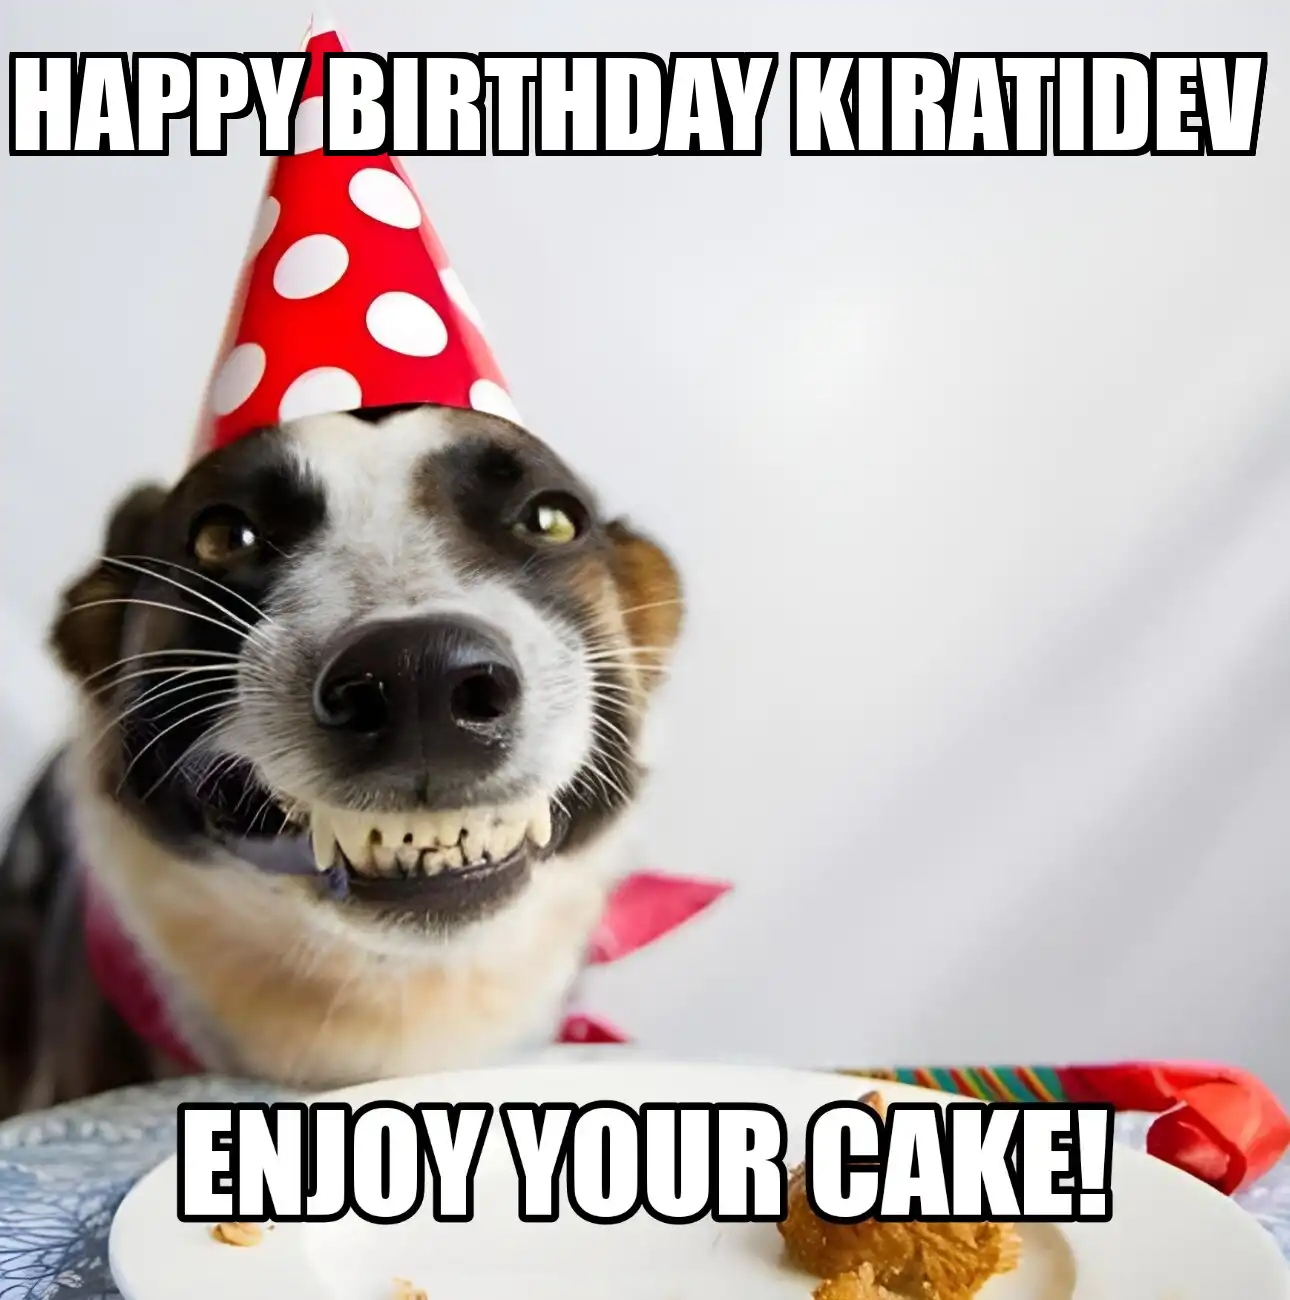 Happy Birthday Kiratidev Enjoy Your Cake Dog Meme